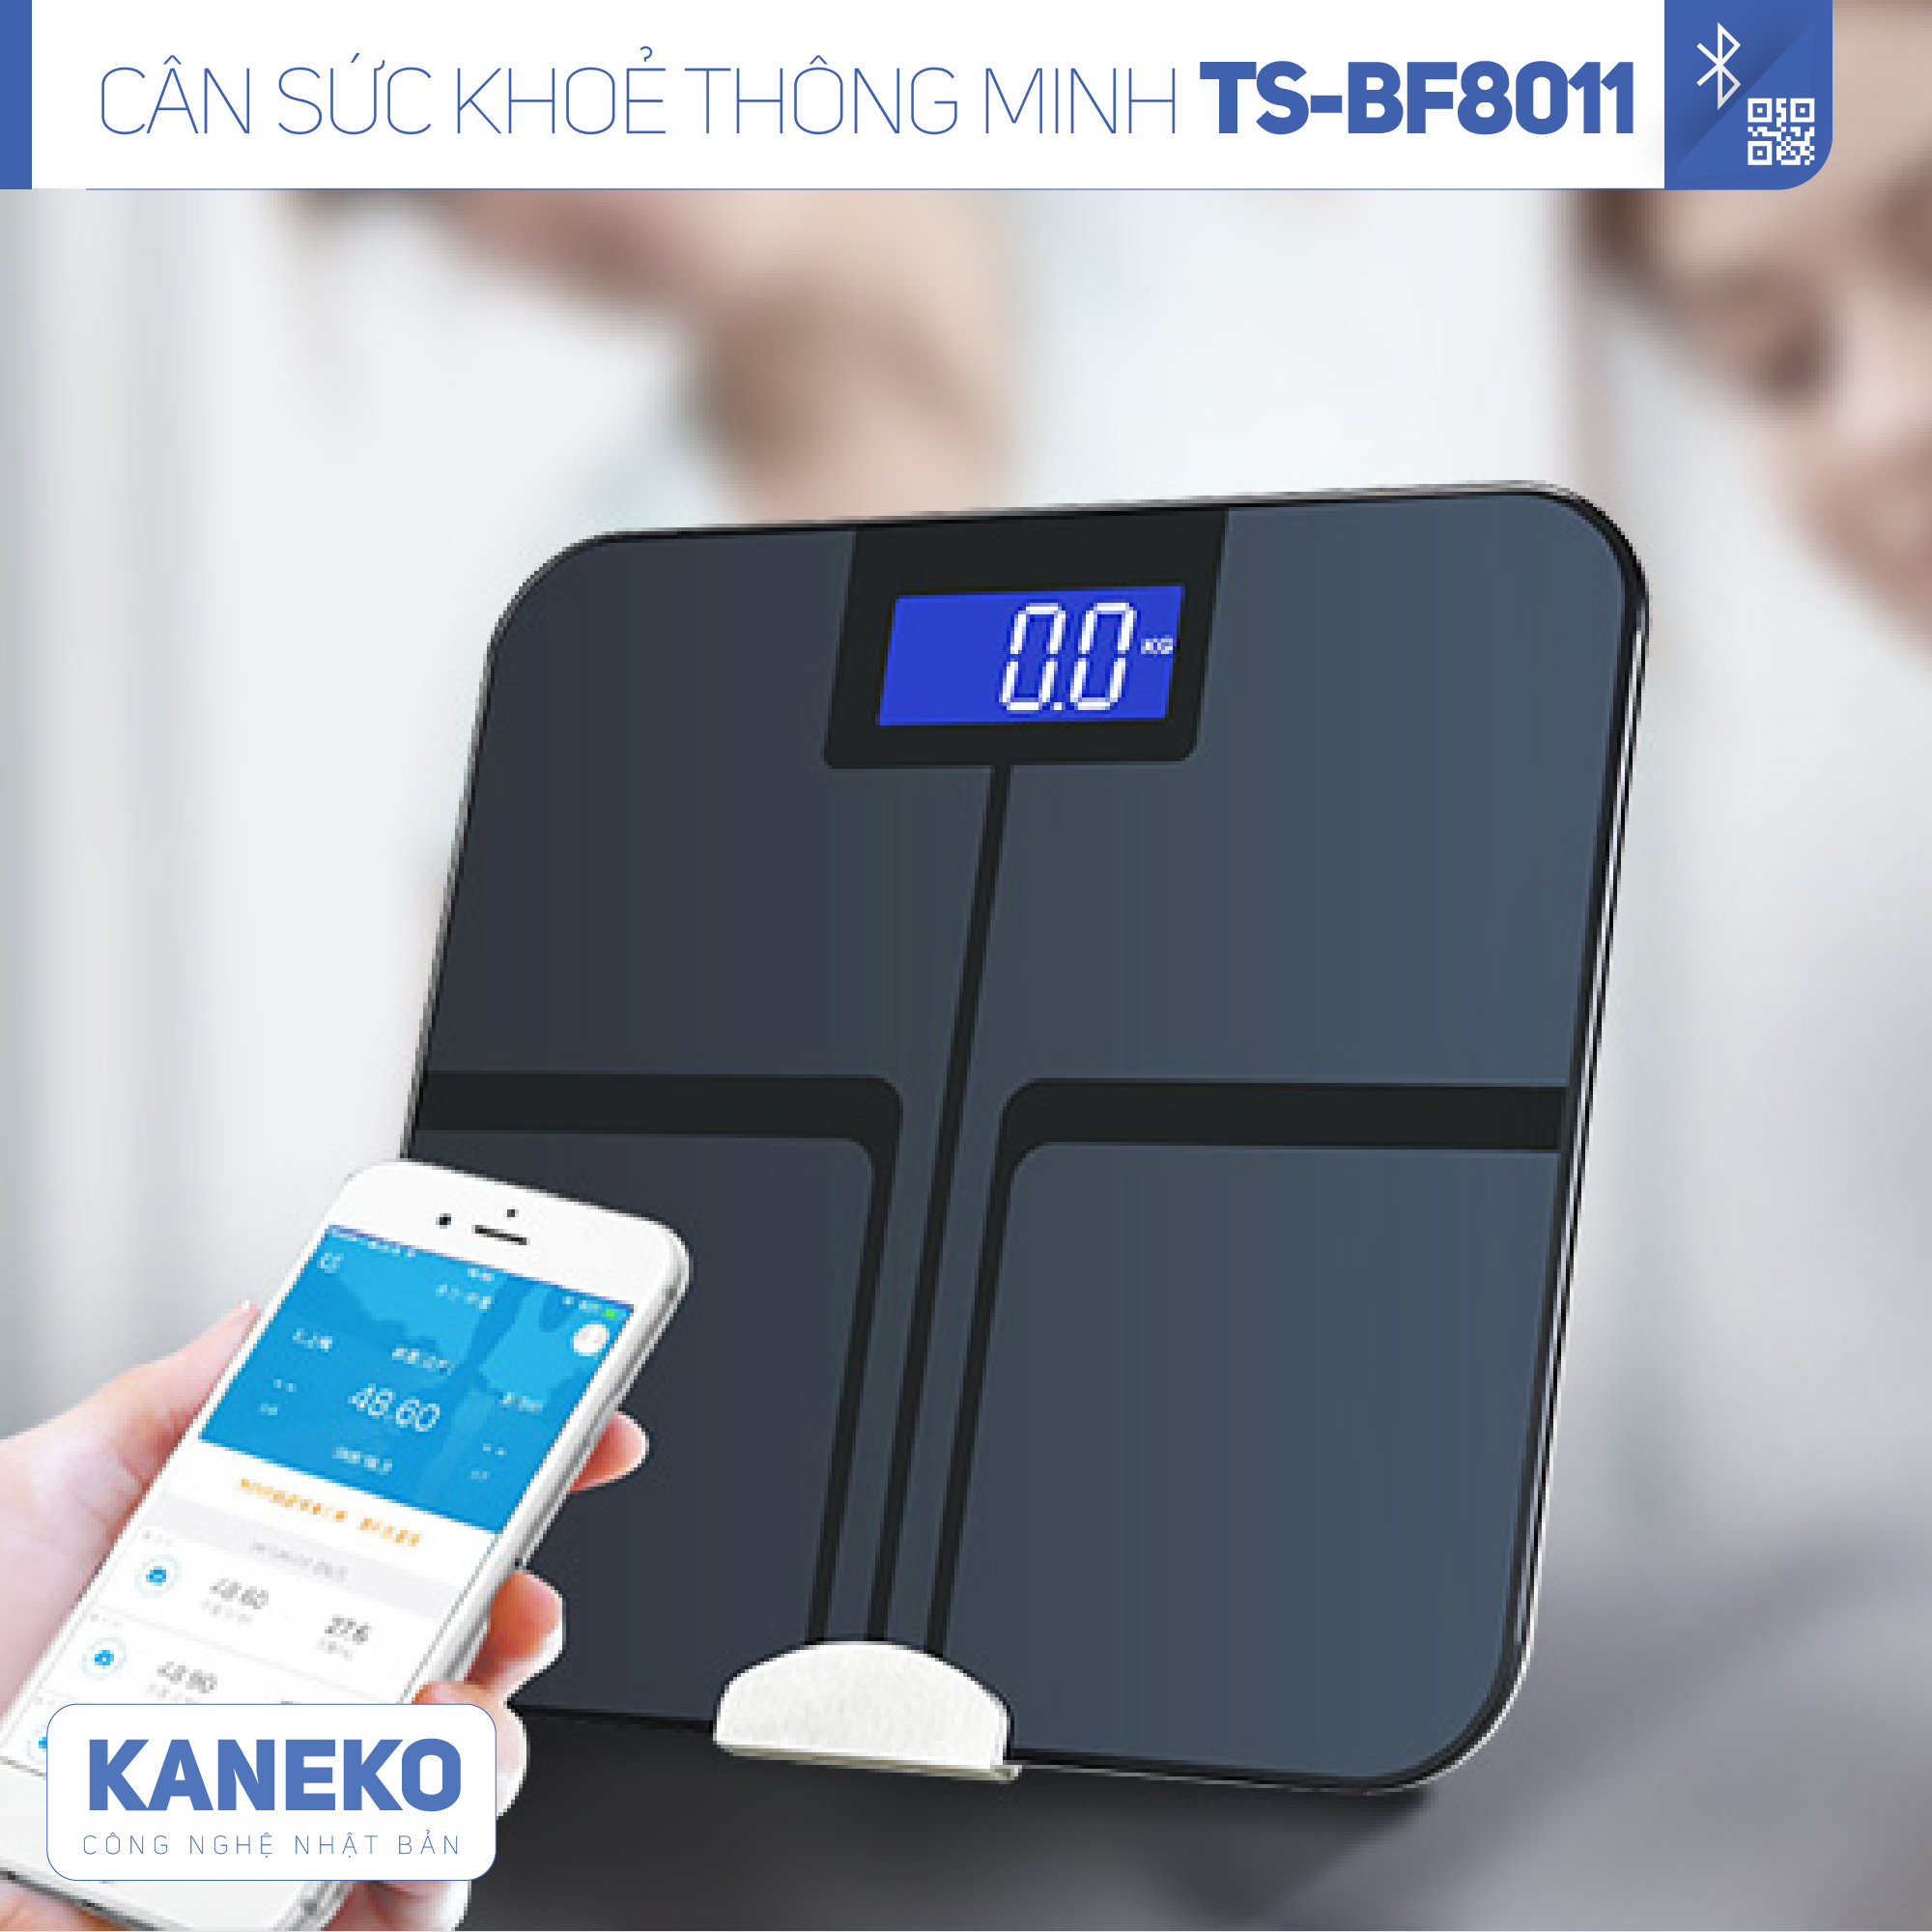 Cân sức khoẻ thông minh điện tử KANEKO TSBF8011,cân phân tích sức khoẻ điện tử,cân sức khoẻ dành cho gia đình,cân điện tử thông minh kết nối bluetooth,cân đo 12 chỉ số cơ thể